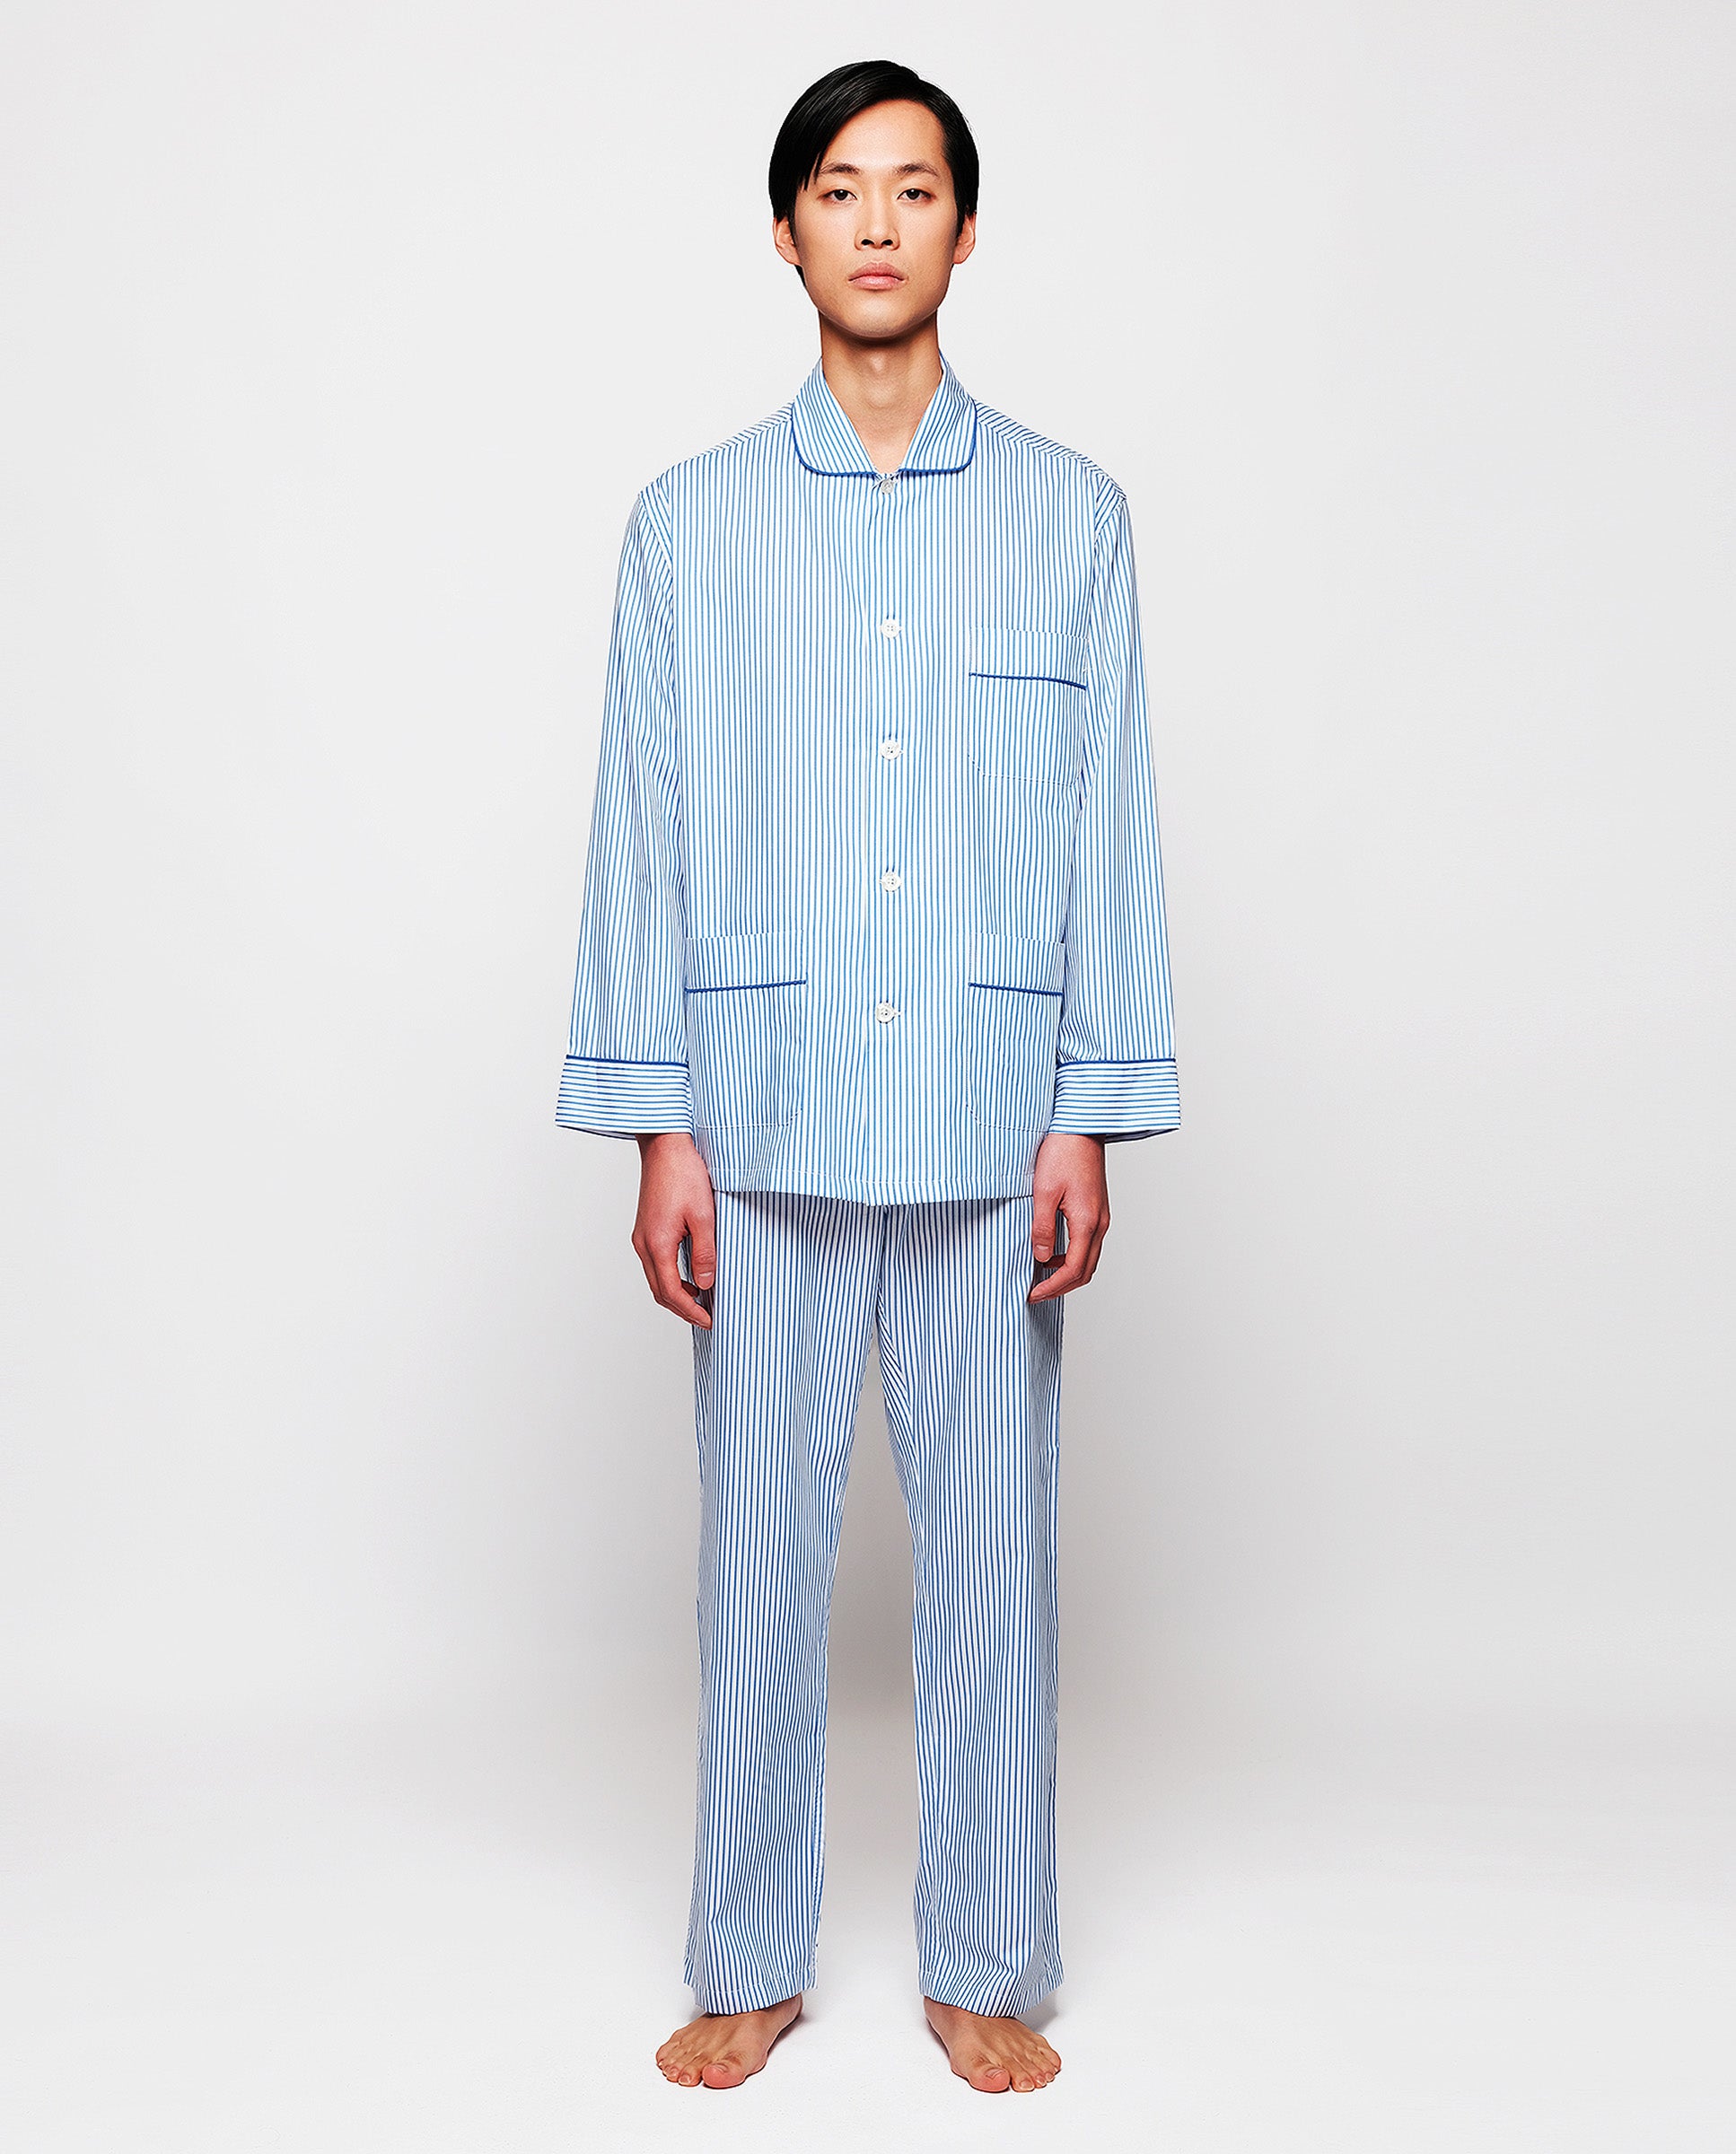 Blue cotton striped long pajamas by MIRTO